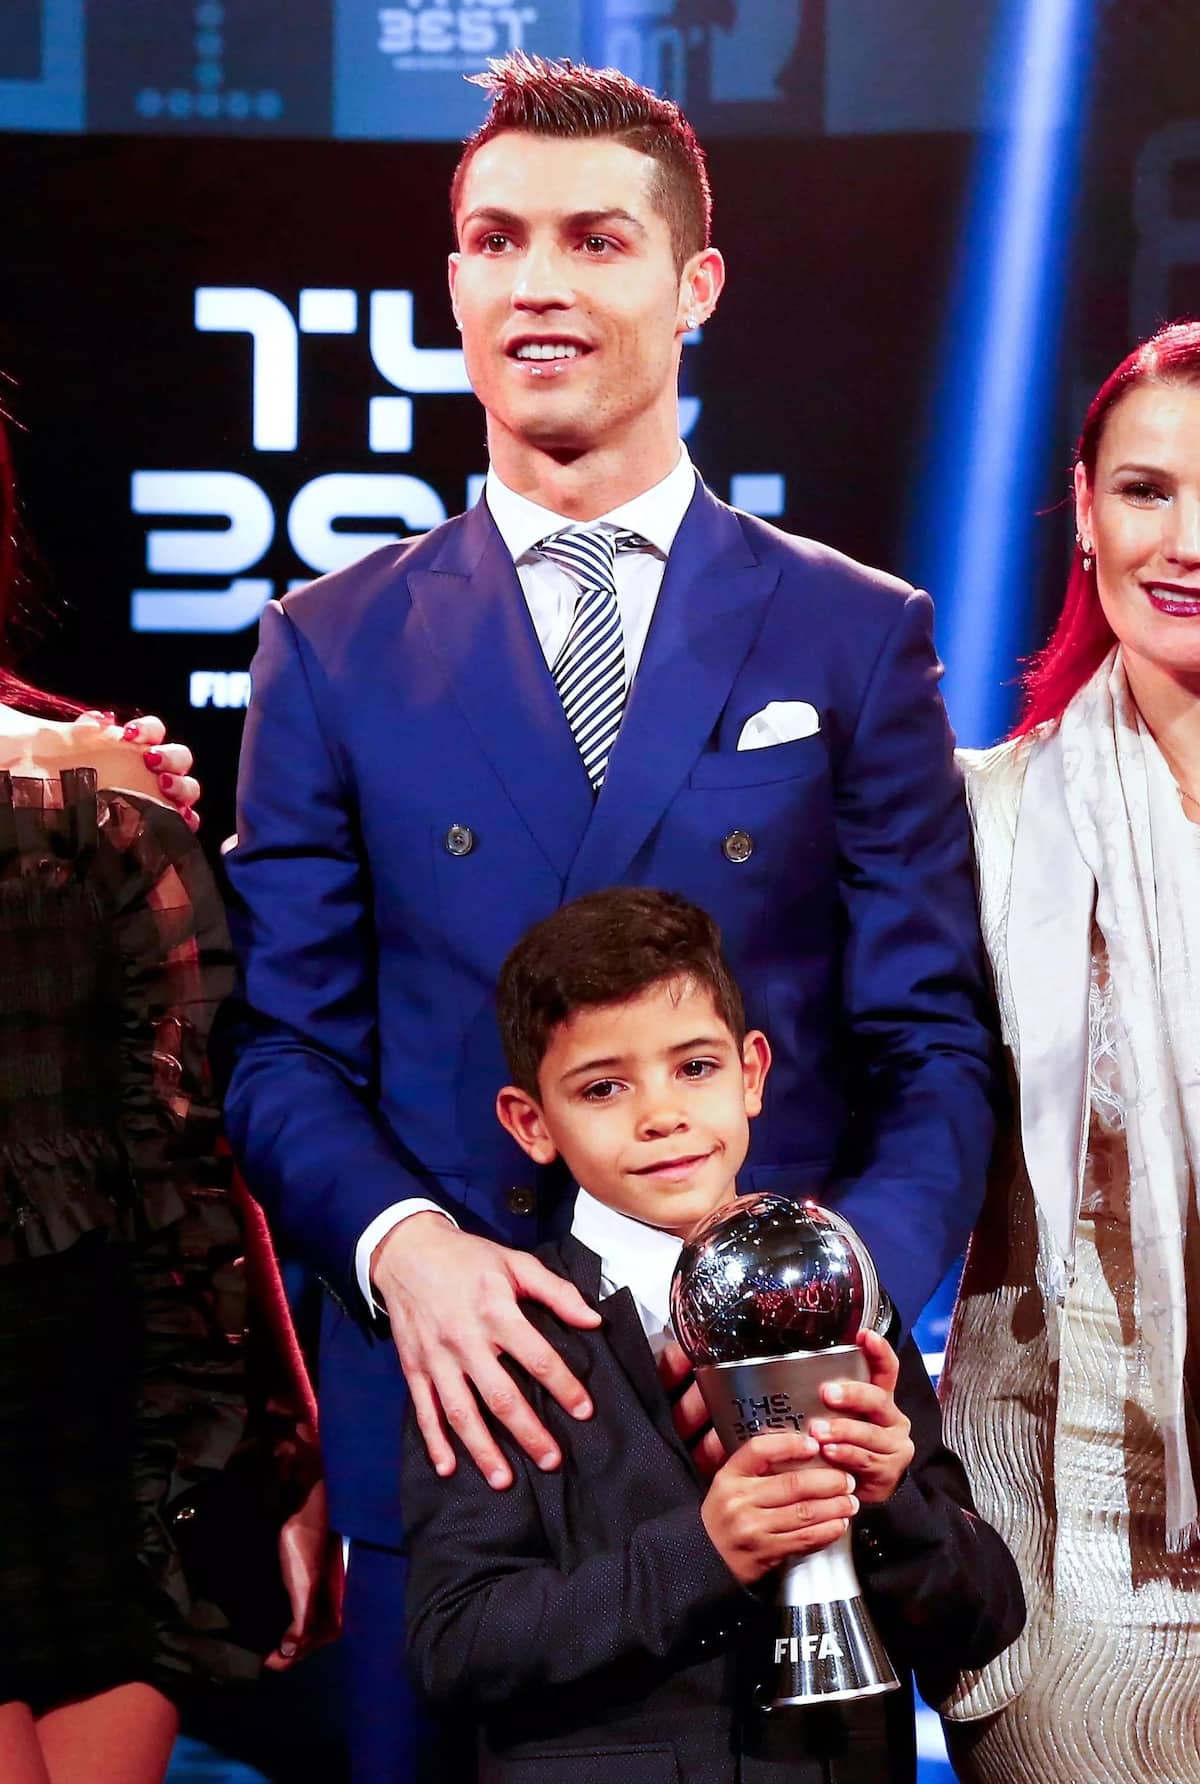 Cristiano Ronaldo wife 2018 - name, age, pics and children ...